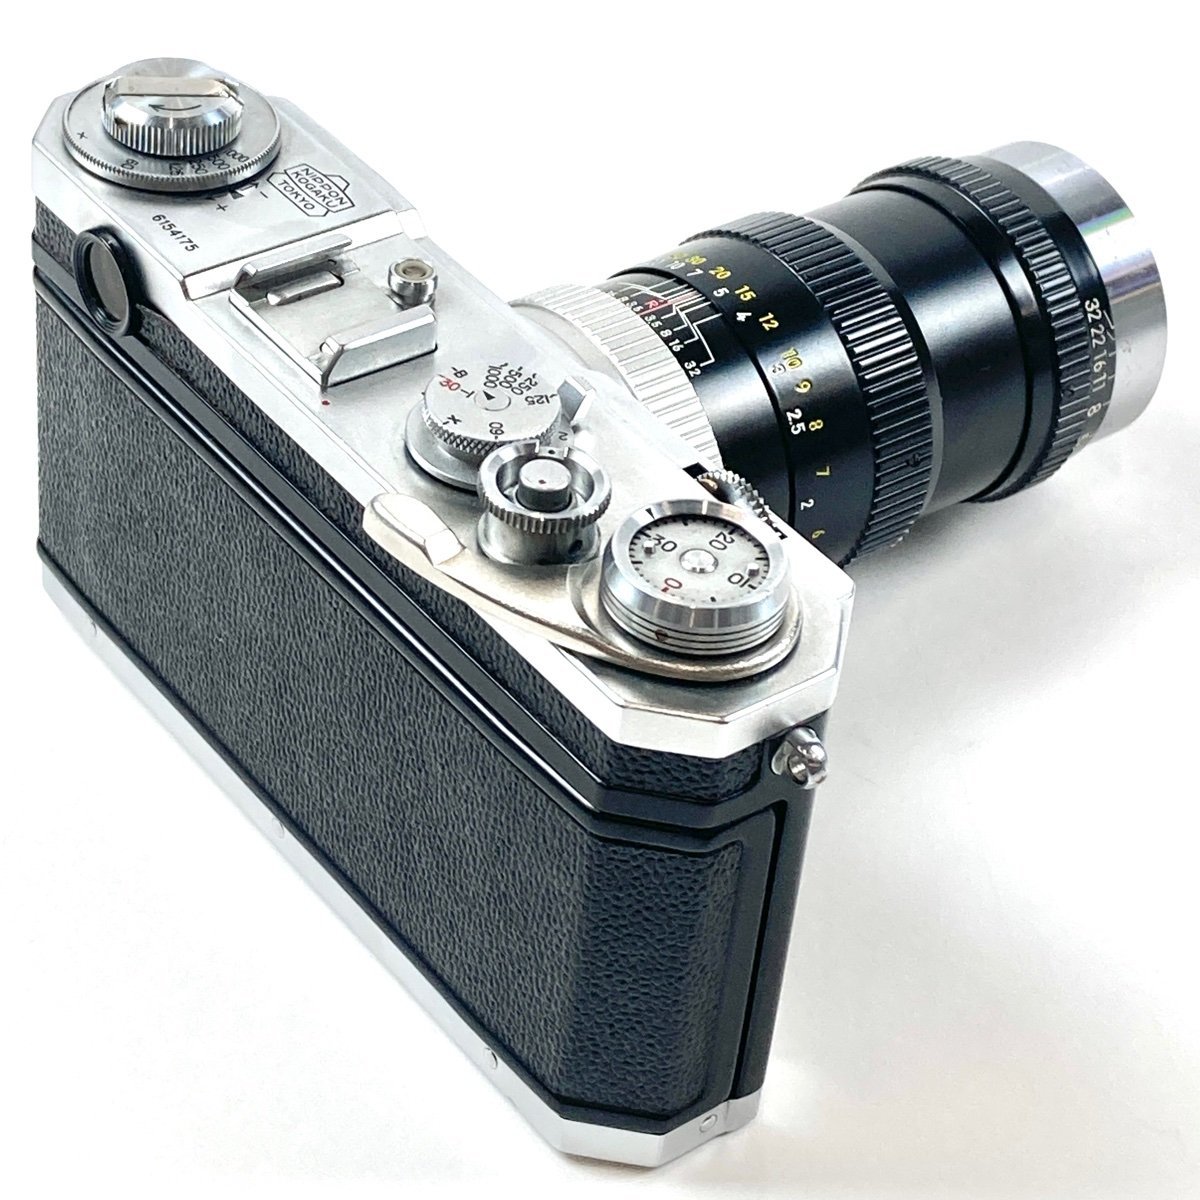 日本製 Nikon ニコン S2 【中古】 レンジファインダーカメラ フィルム